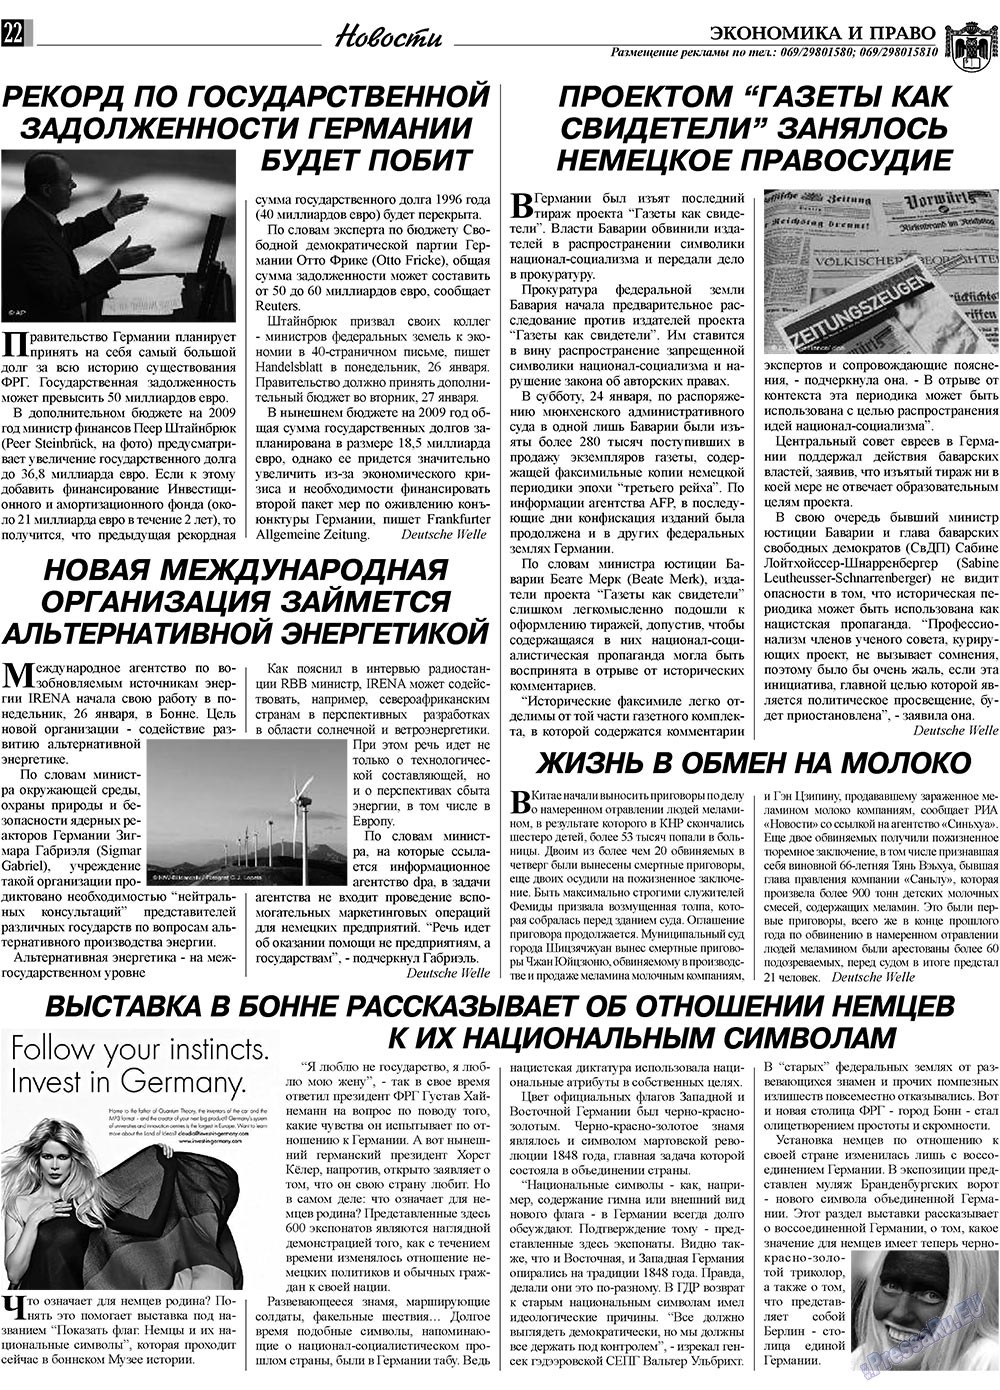 Экономика и право, газета. 2009 №2 стр.22